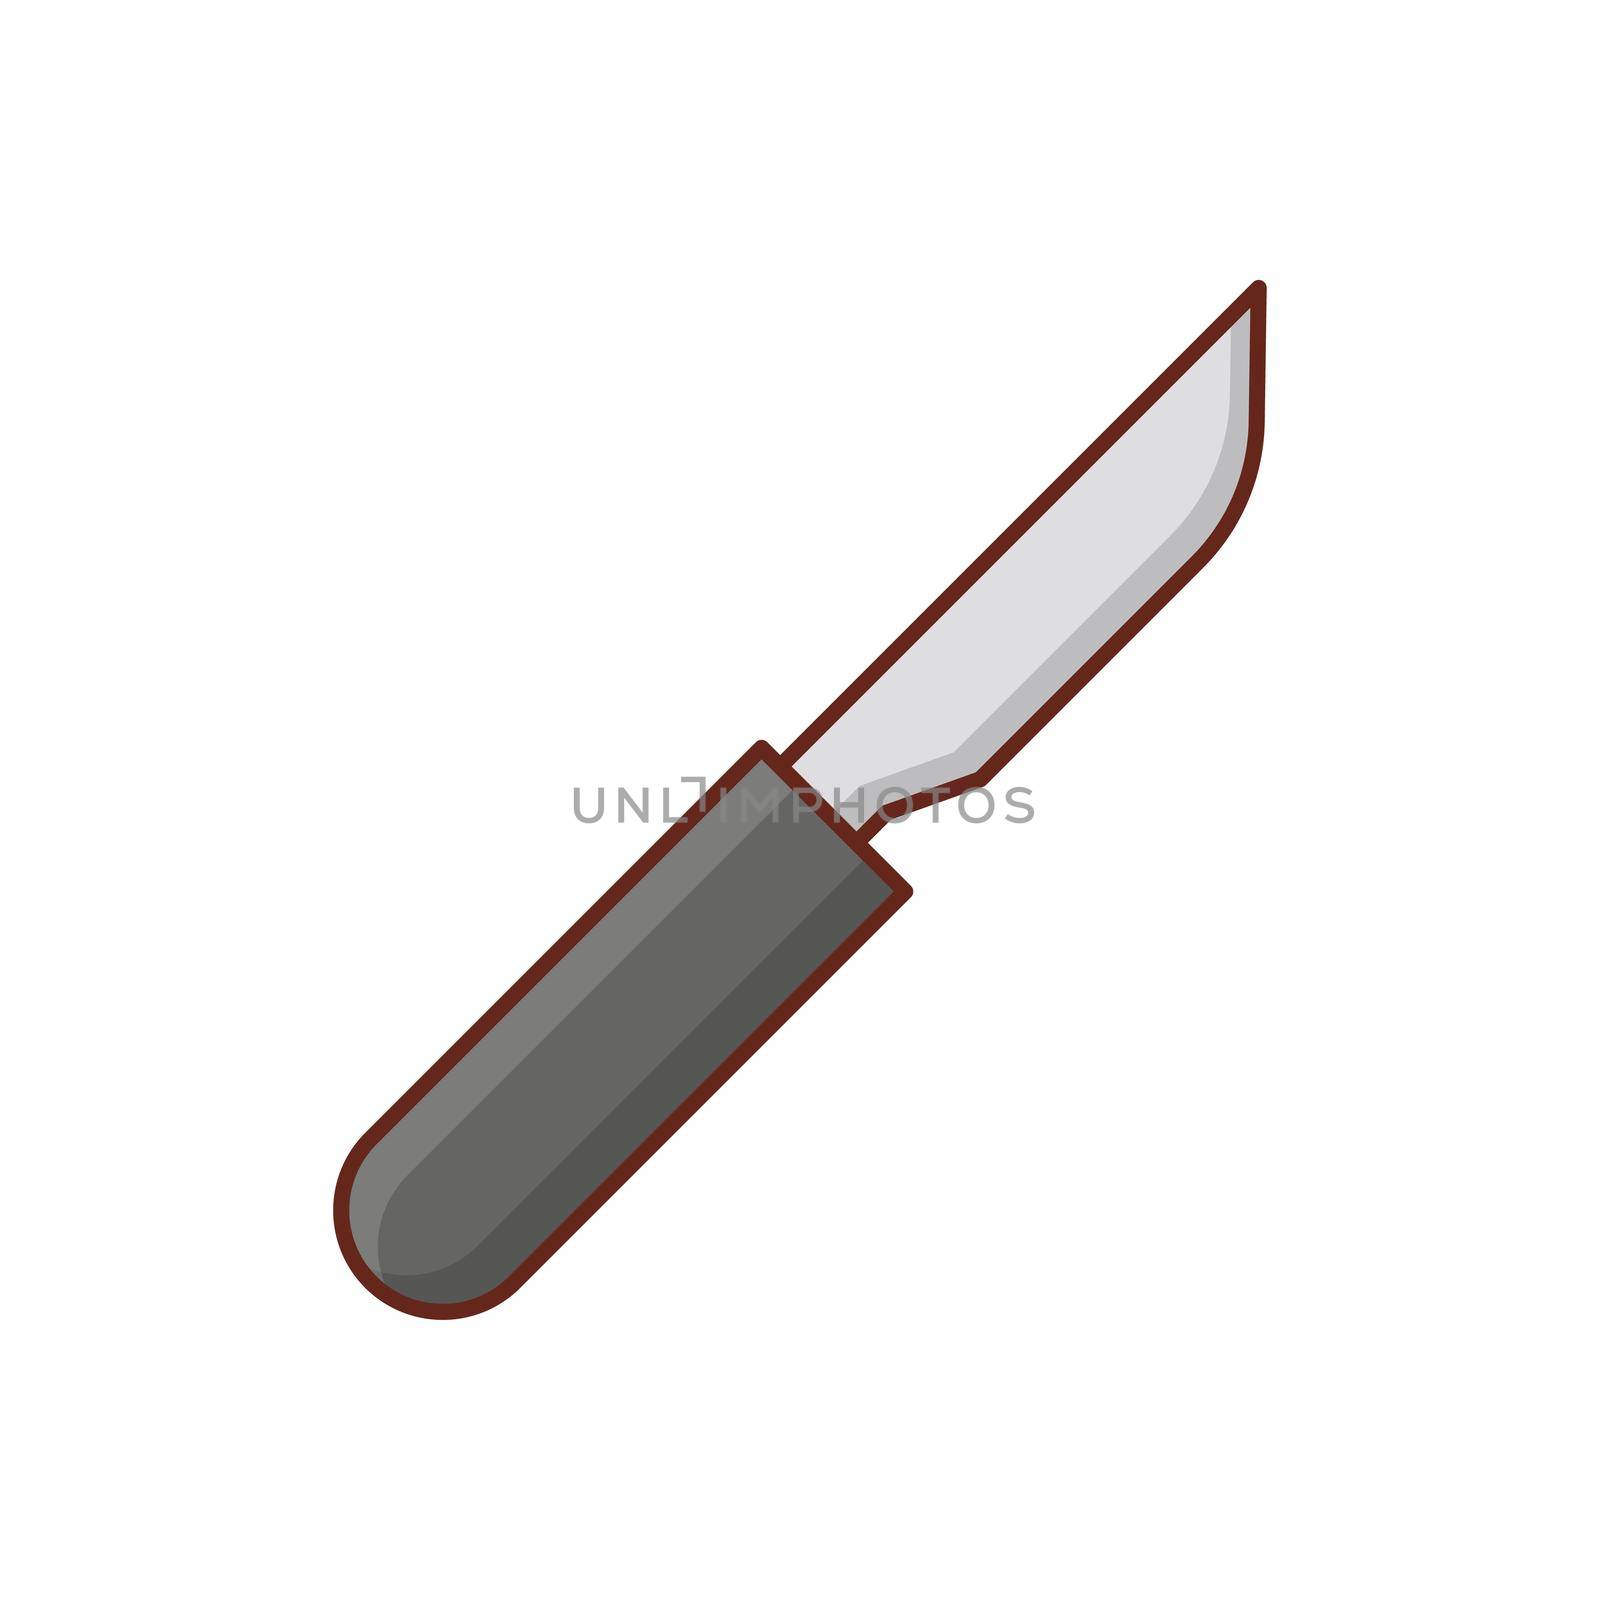 blade by FlaticonsDesign